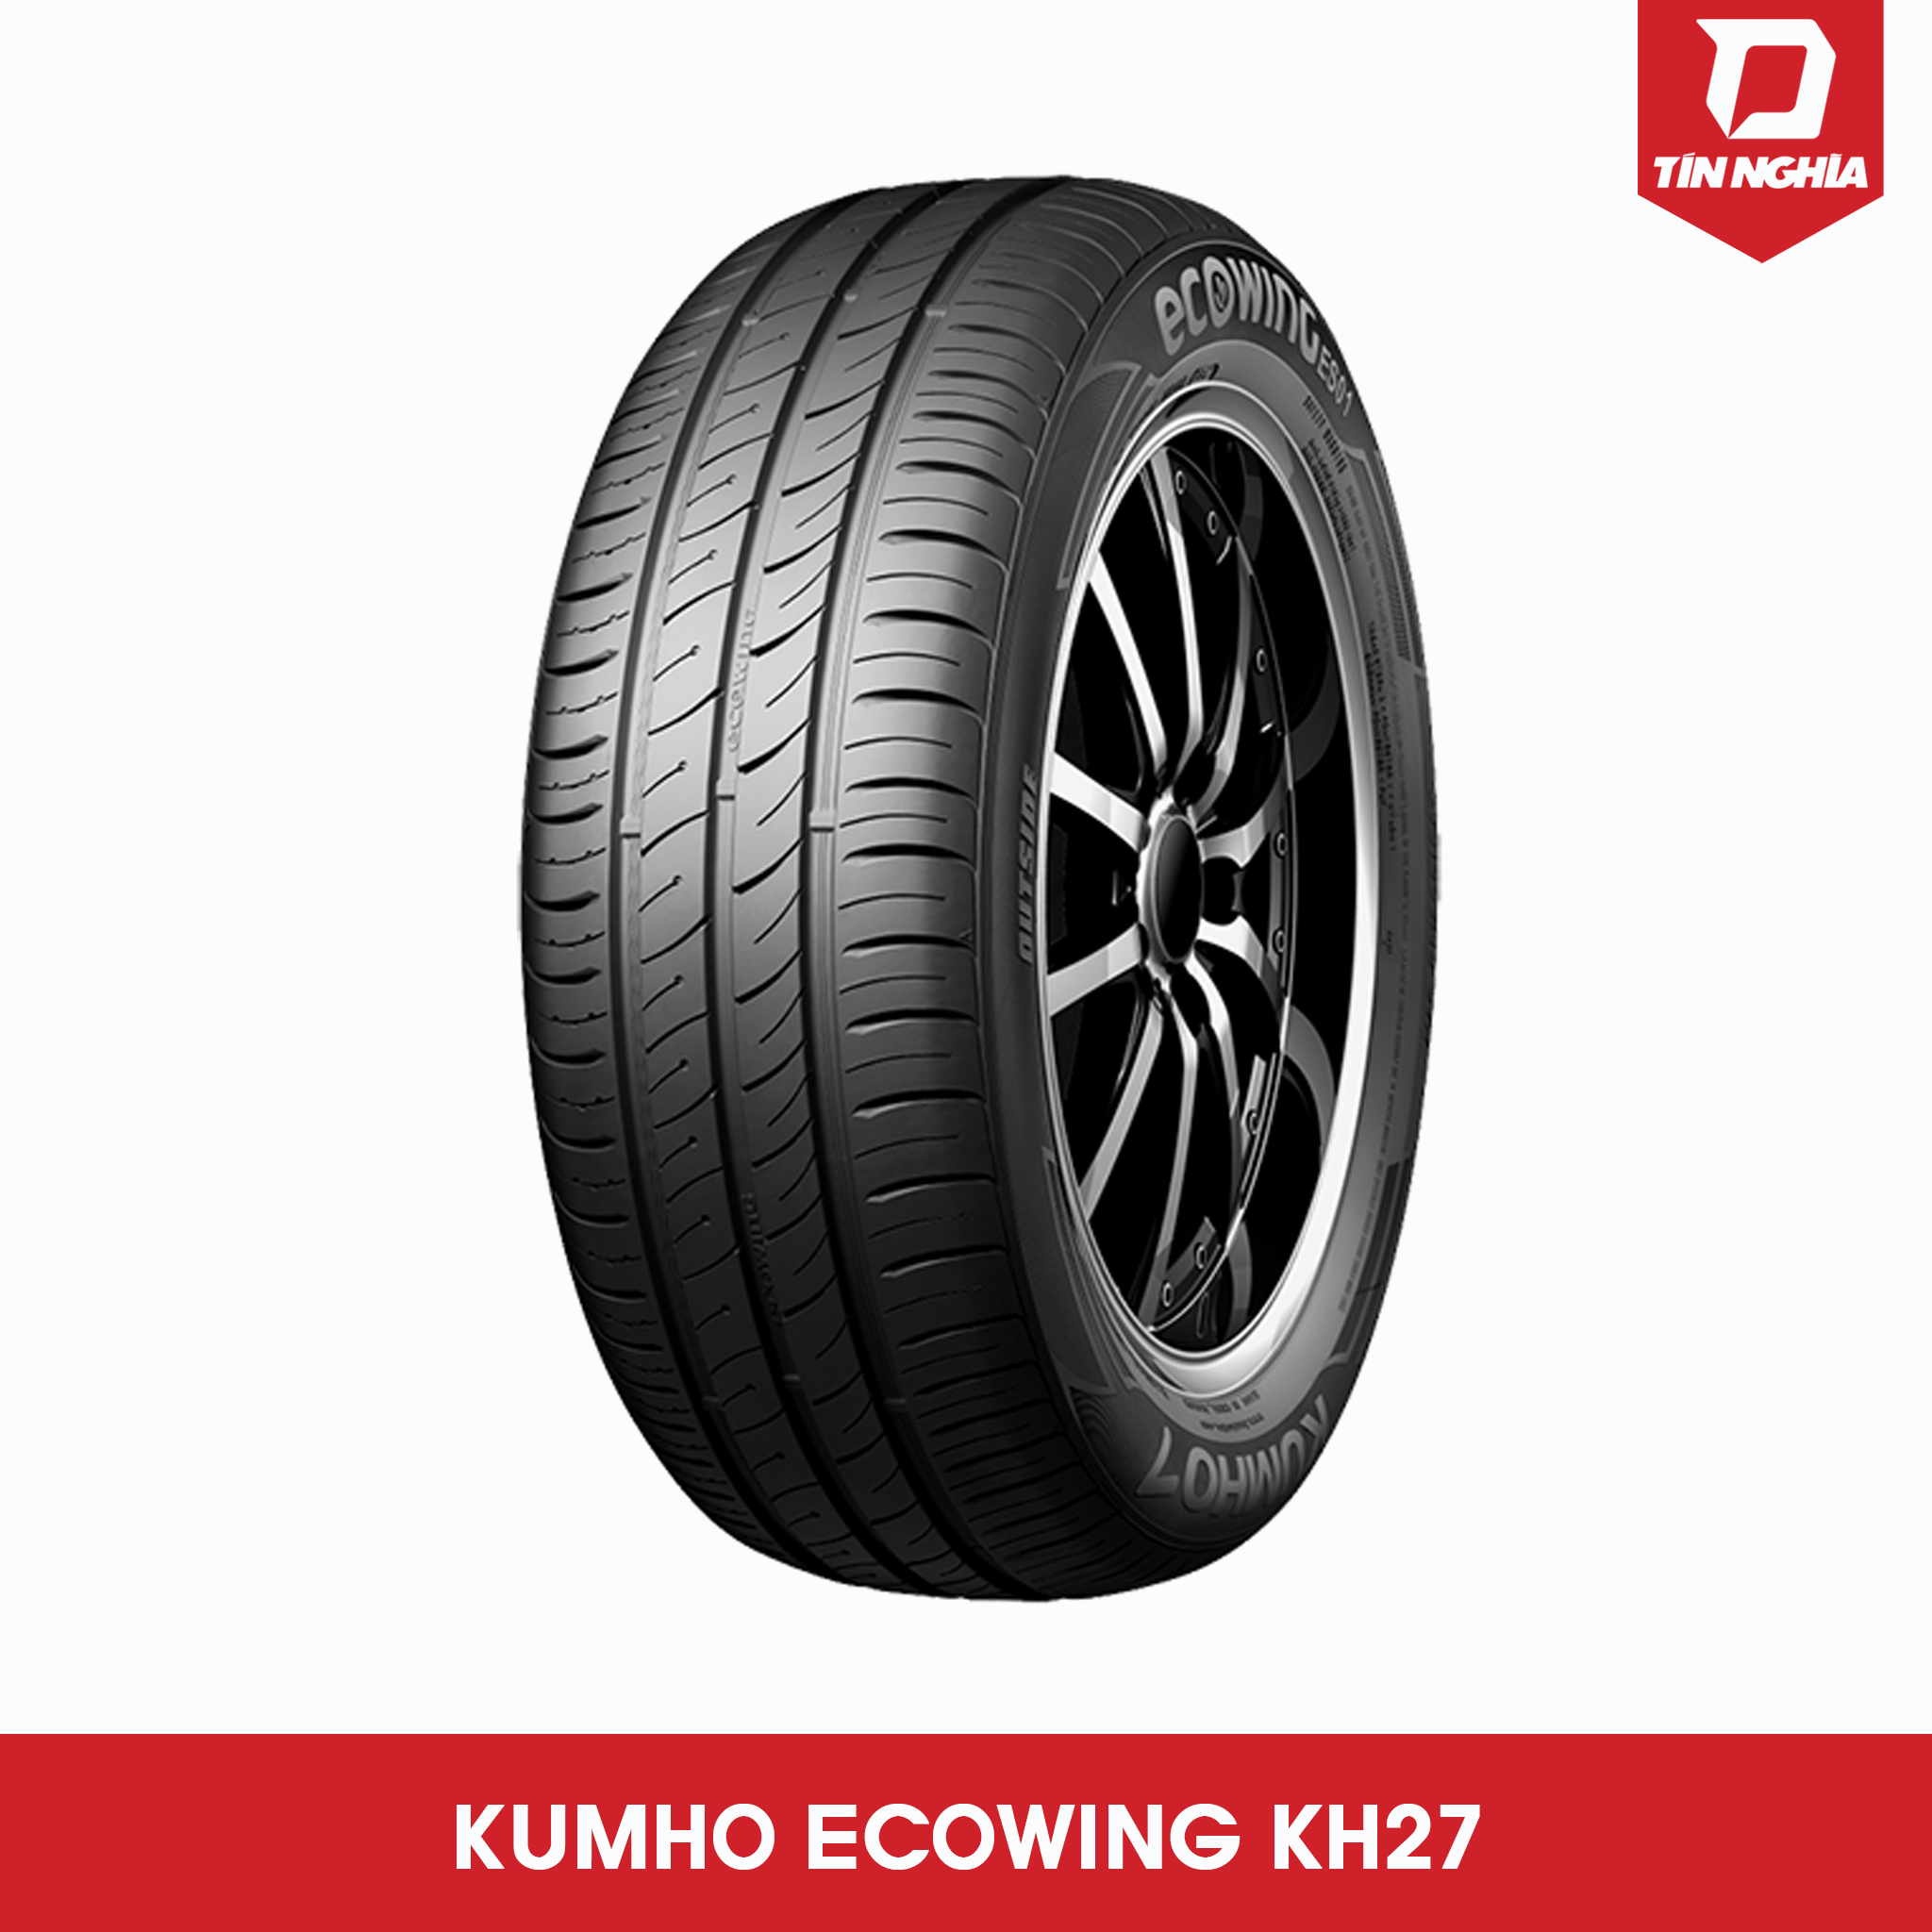 KUMHO ECOWING KH27